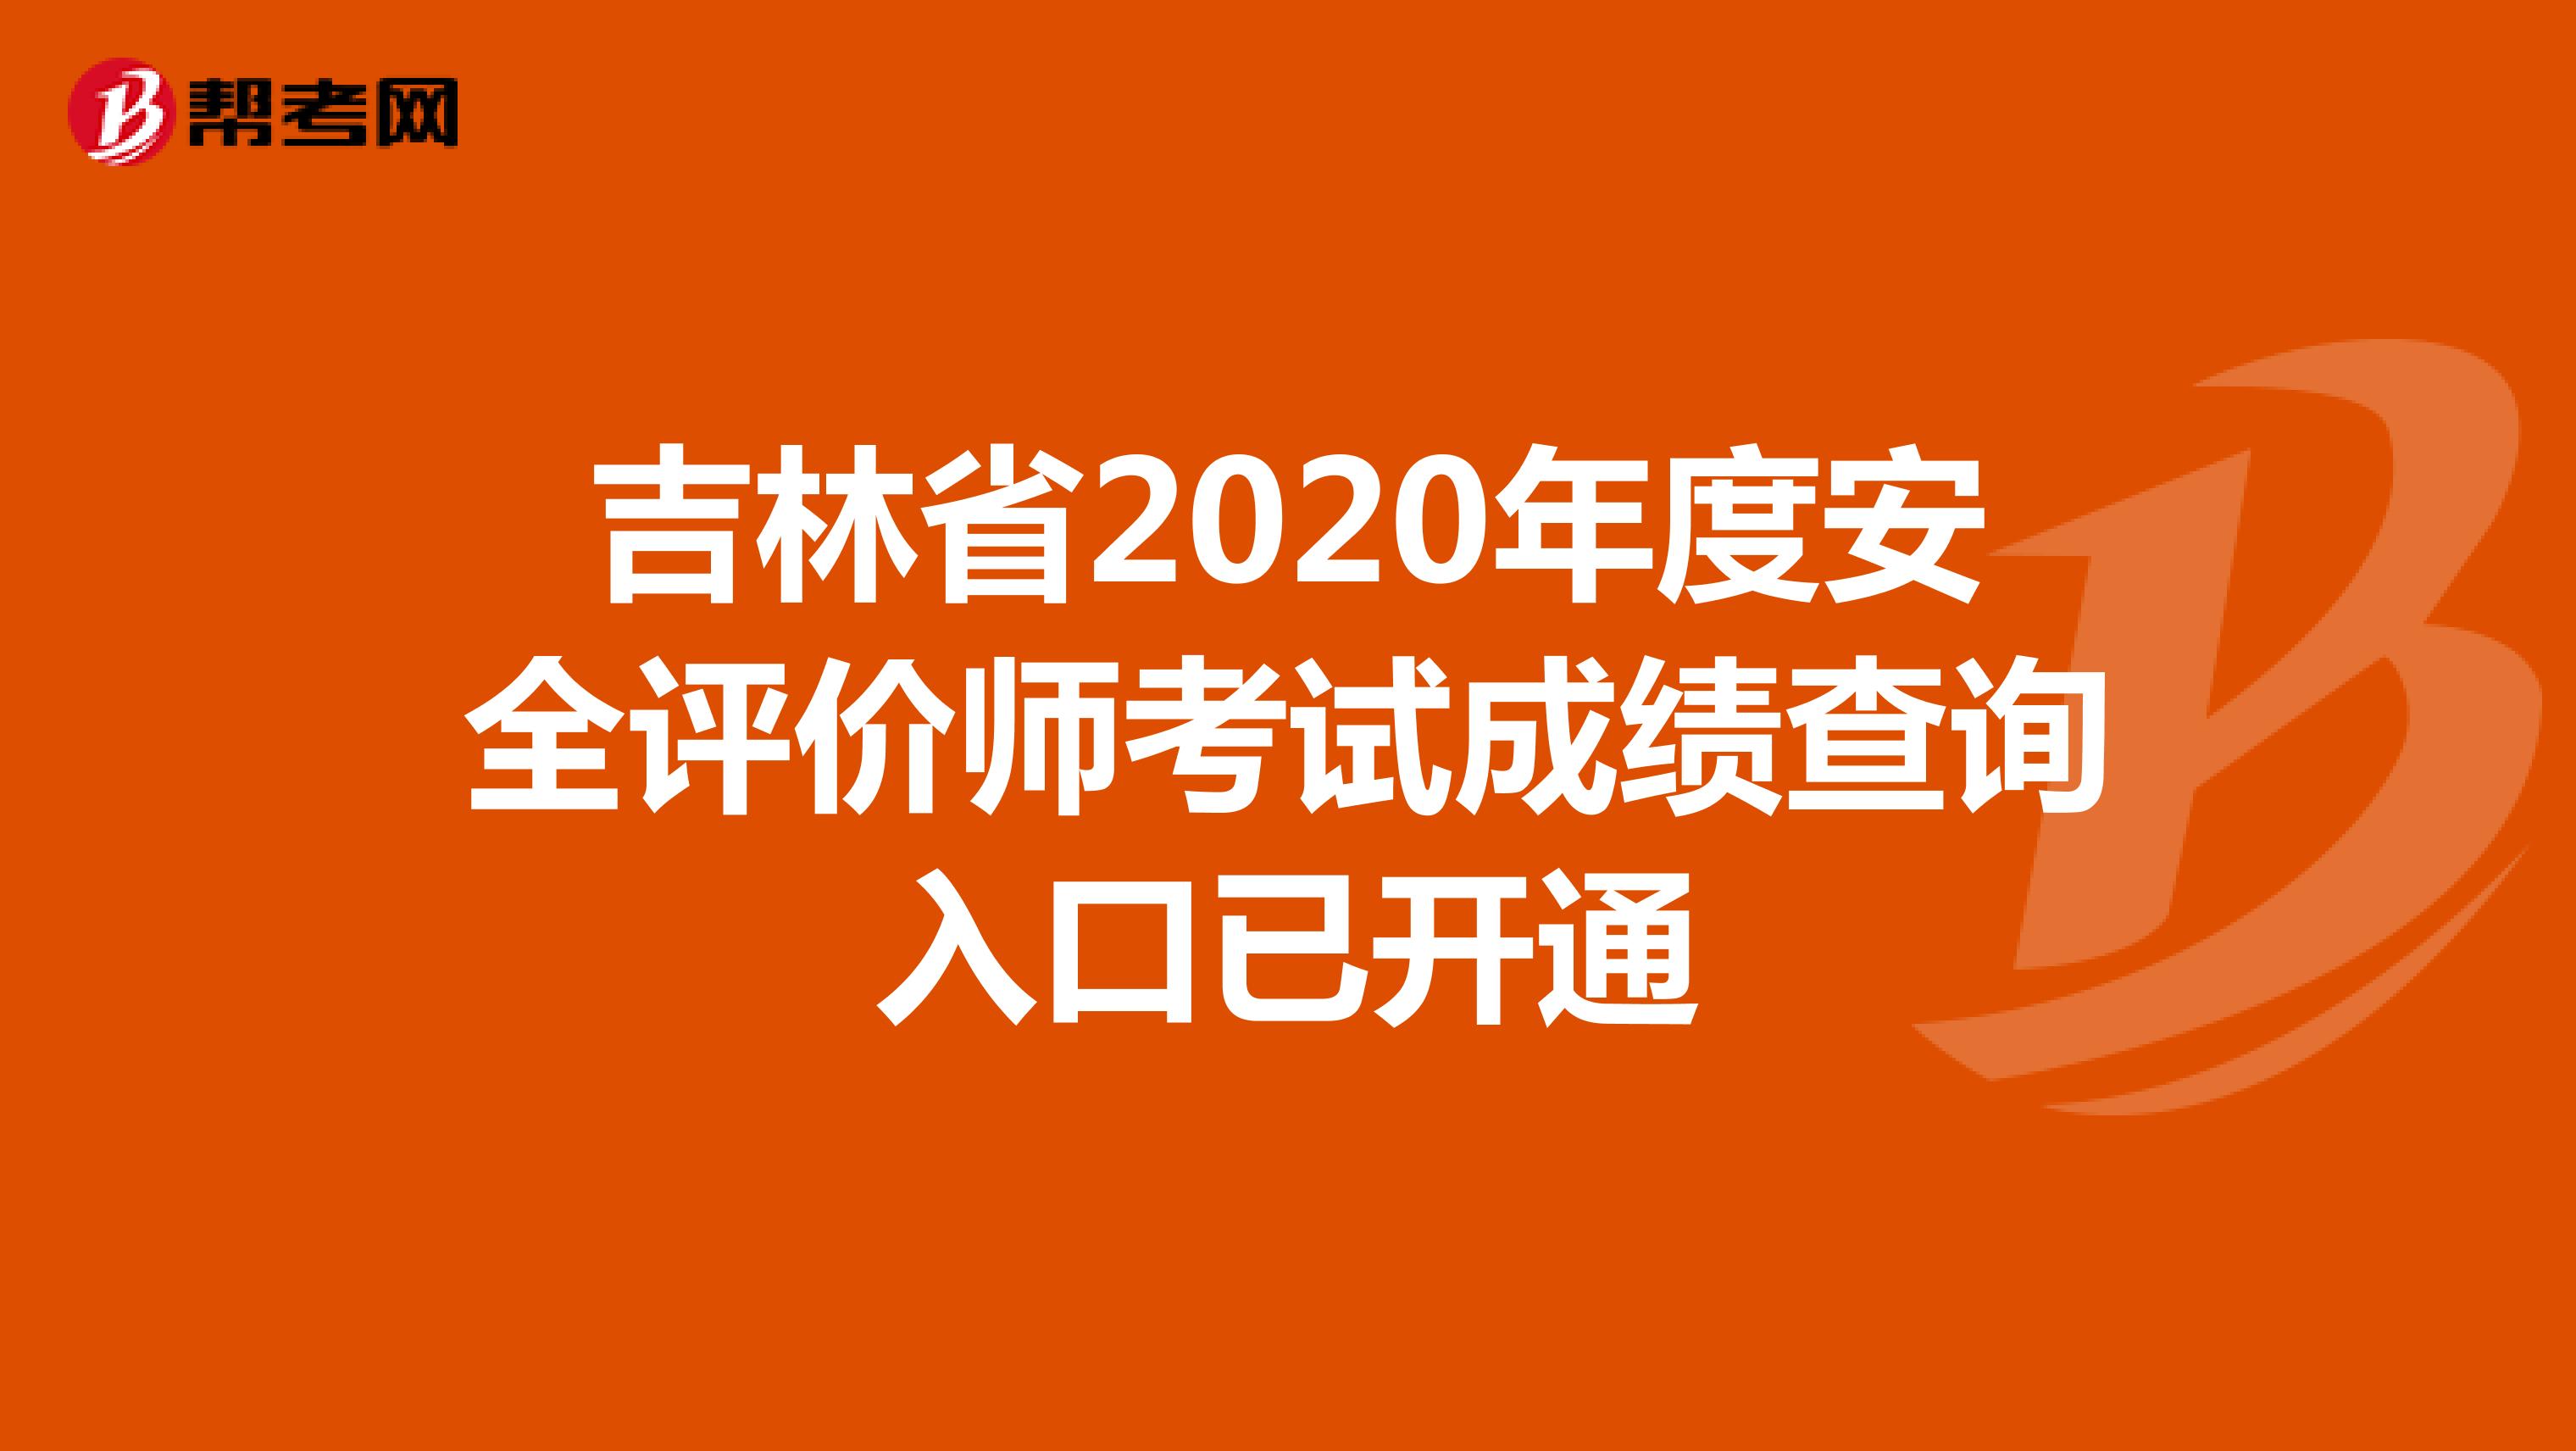 吉林省2020年度安全评价师考试成绩查询入口已开通